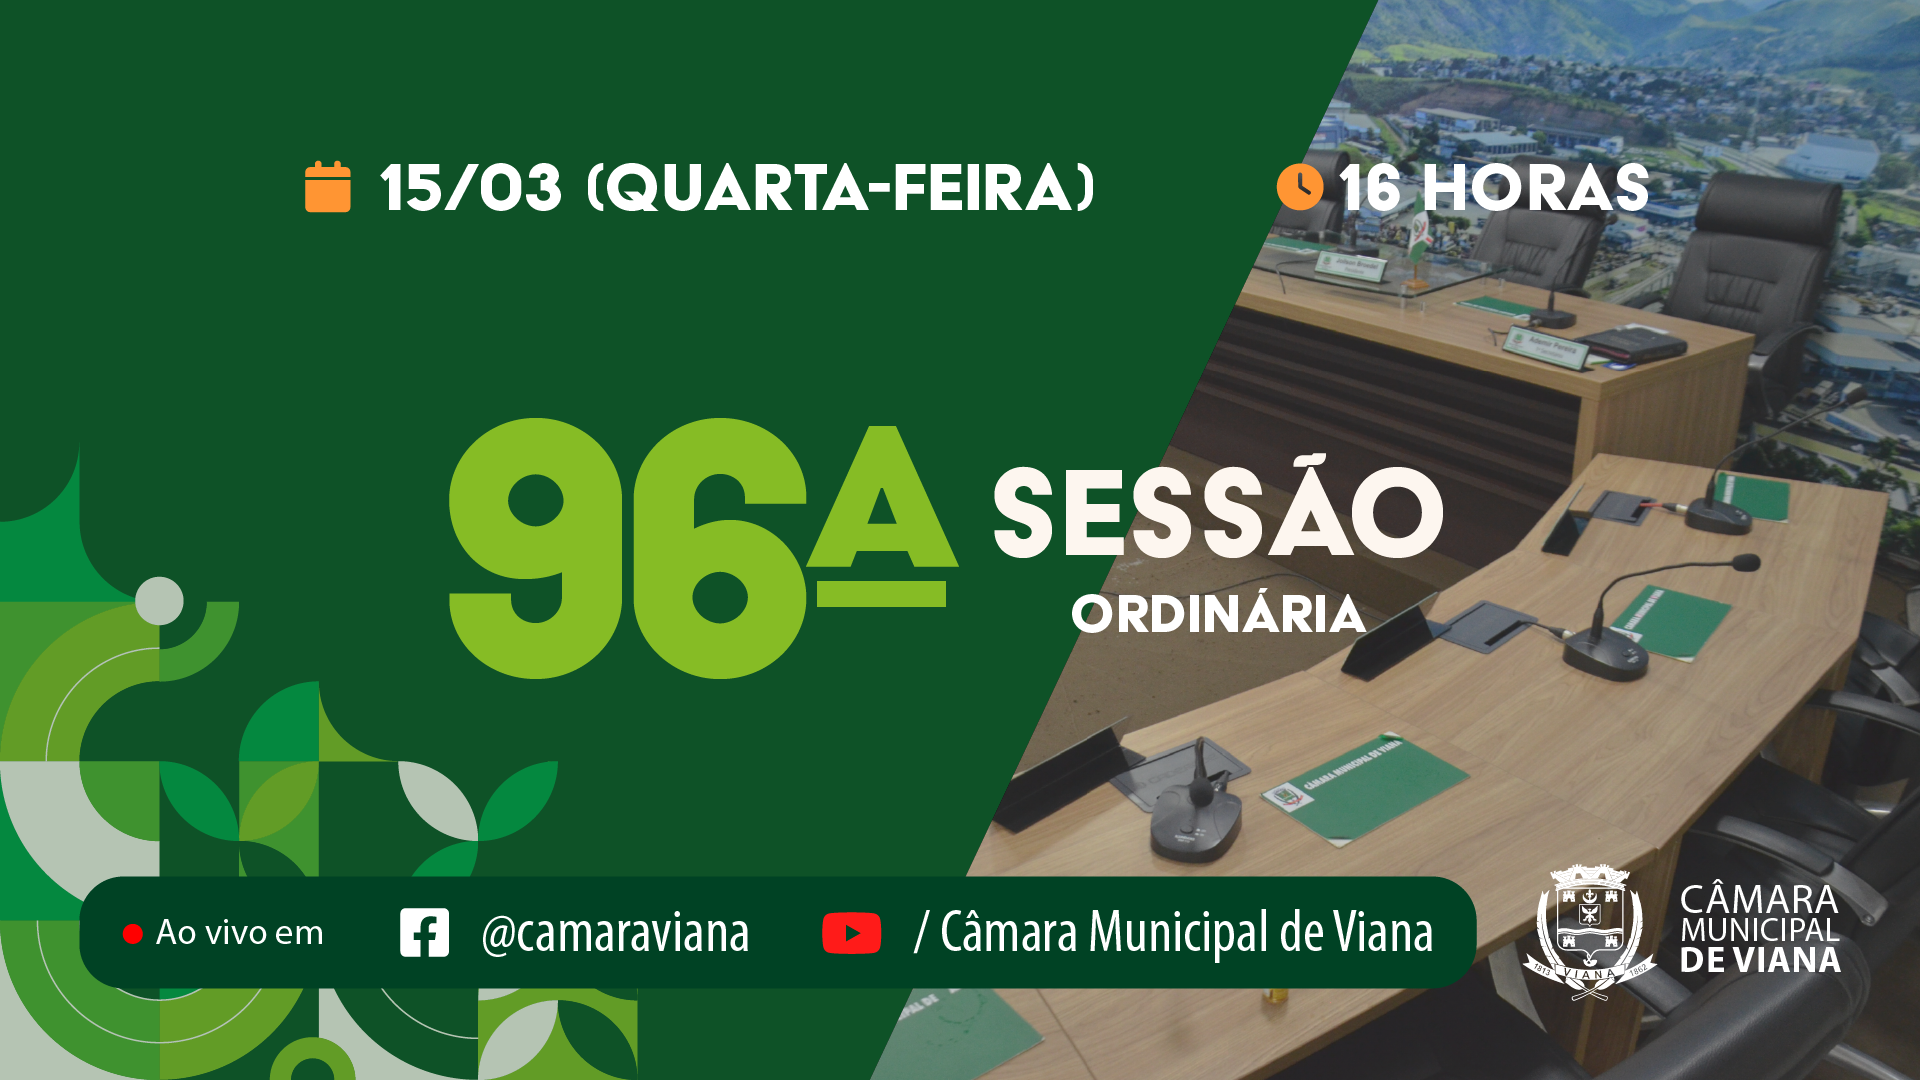 PAUTA DA NONAGÉSIMA SEXTA (96ª) SESSÃO ORDINÁRIA